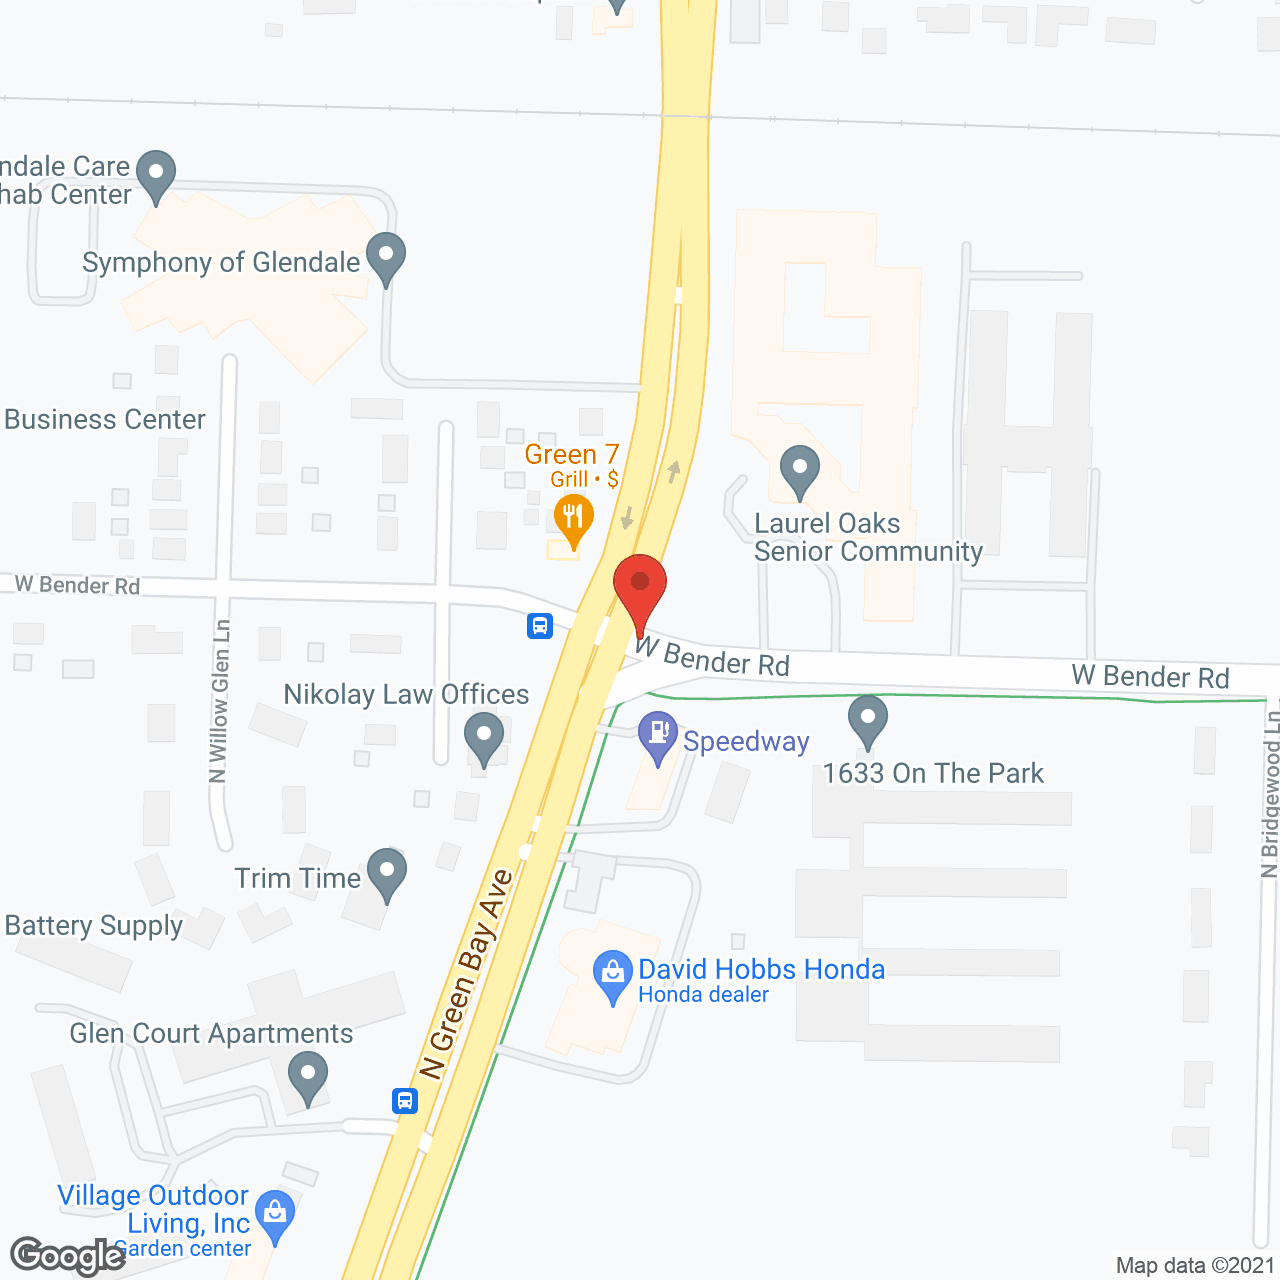 Laurel Oaks in google map